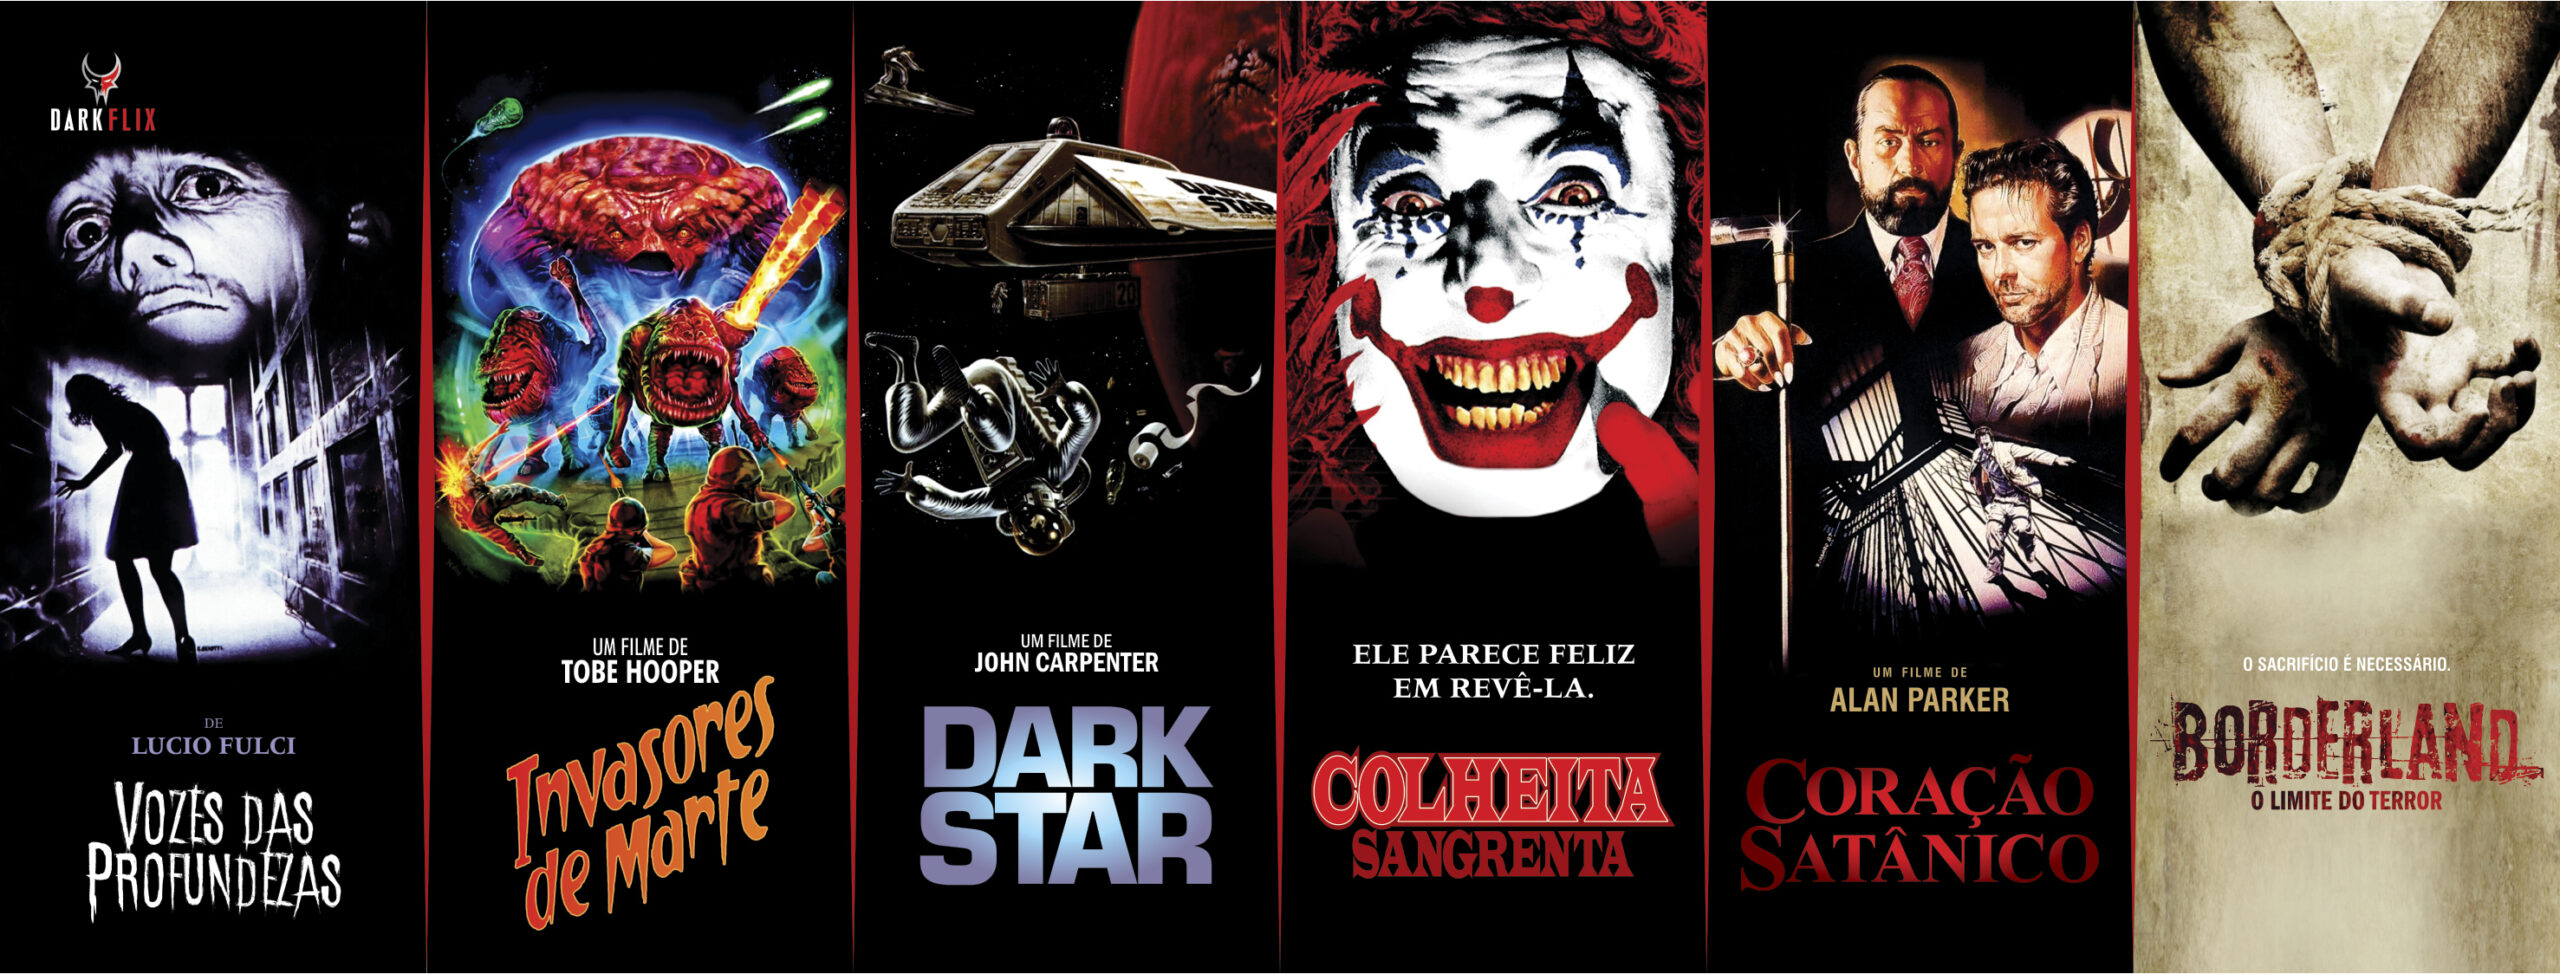 Darkflix: assista grandes filmes de terror por R$9,90